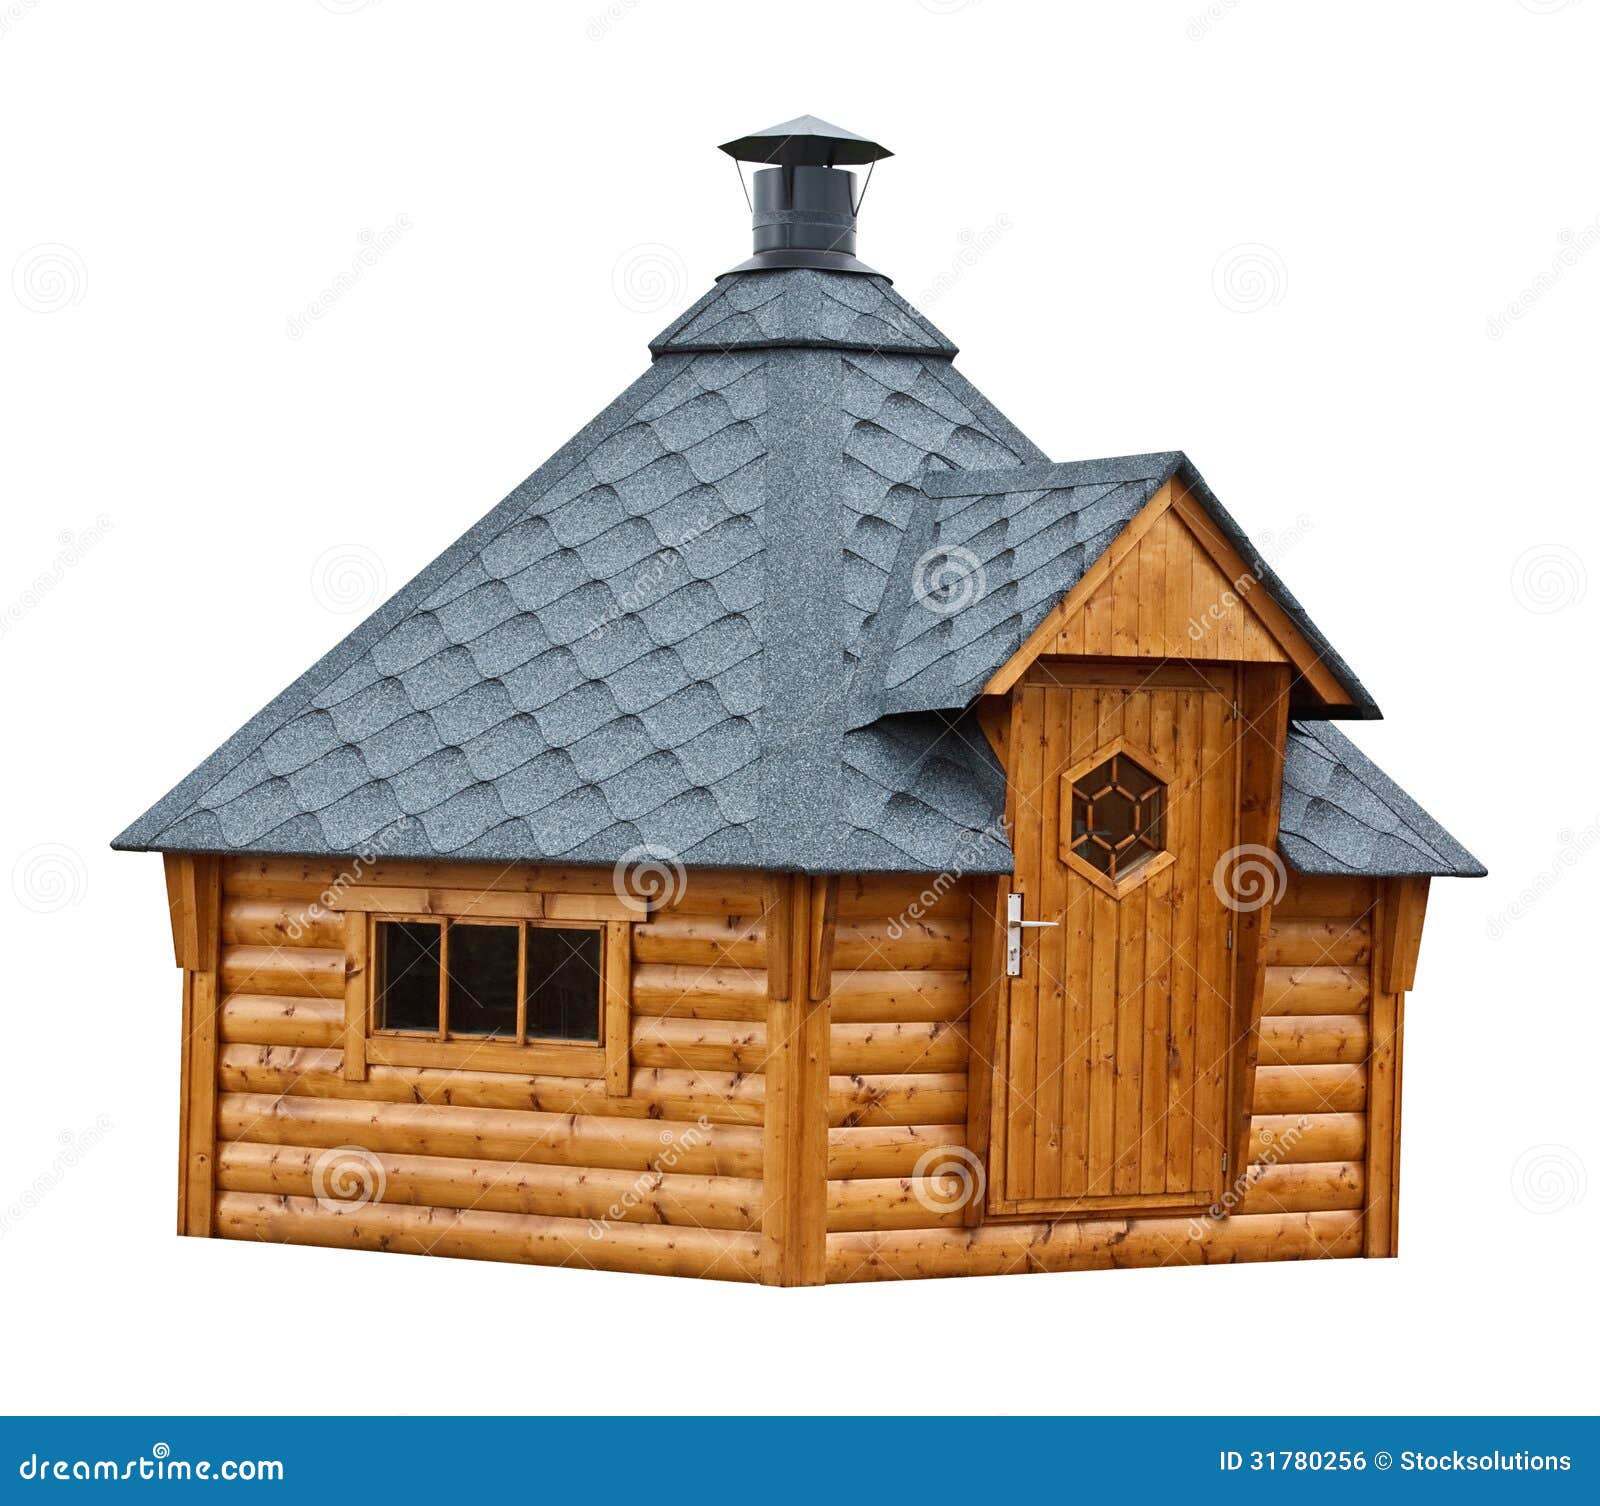 Timber Garden Sauna Building Royalty Free Stock Image ...